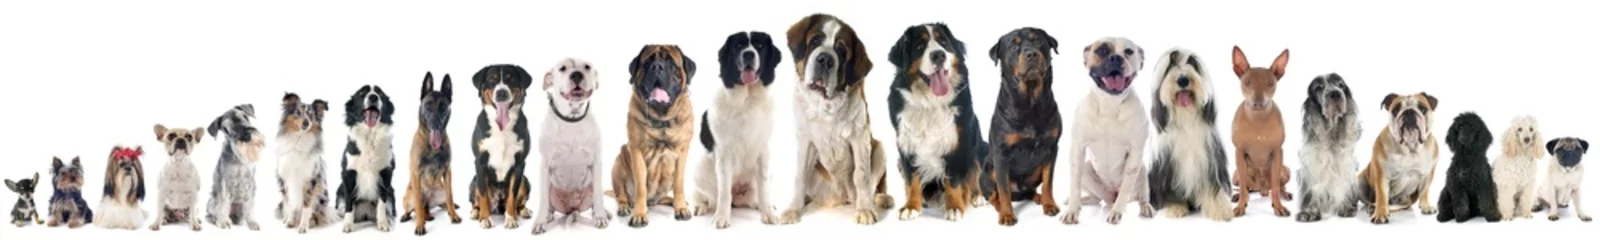 Fotobehang Hond groep honden